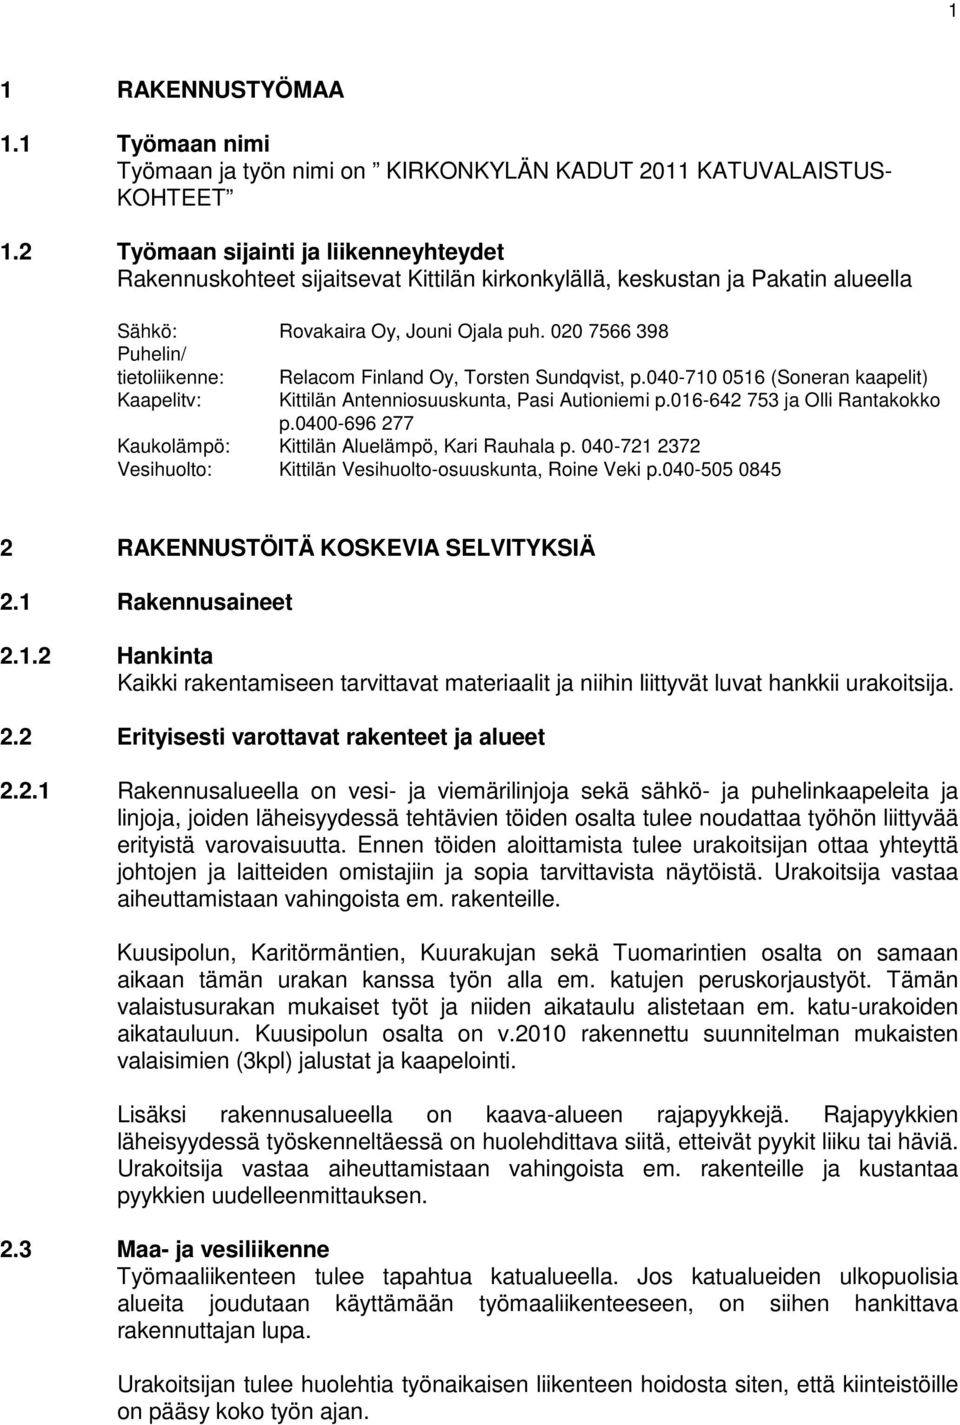 020 7566 398 Puhelin/ tietoliikenne: Relacom Finland Oy, Torsten Sundqvist, p.040-710 0516 (Soneran kaapelit) Kaapelitv: Kittilän Antenniosuuskunta, Pasi Autioniemi p.016-642 753 ja Olli Rantakokko p.